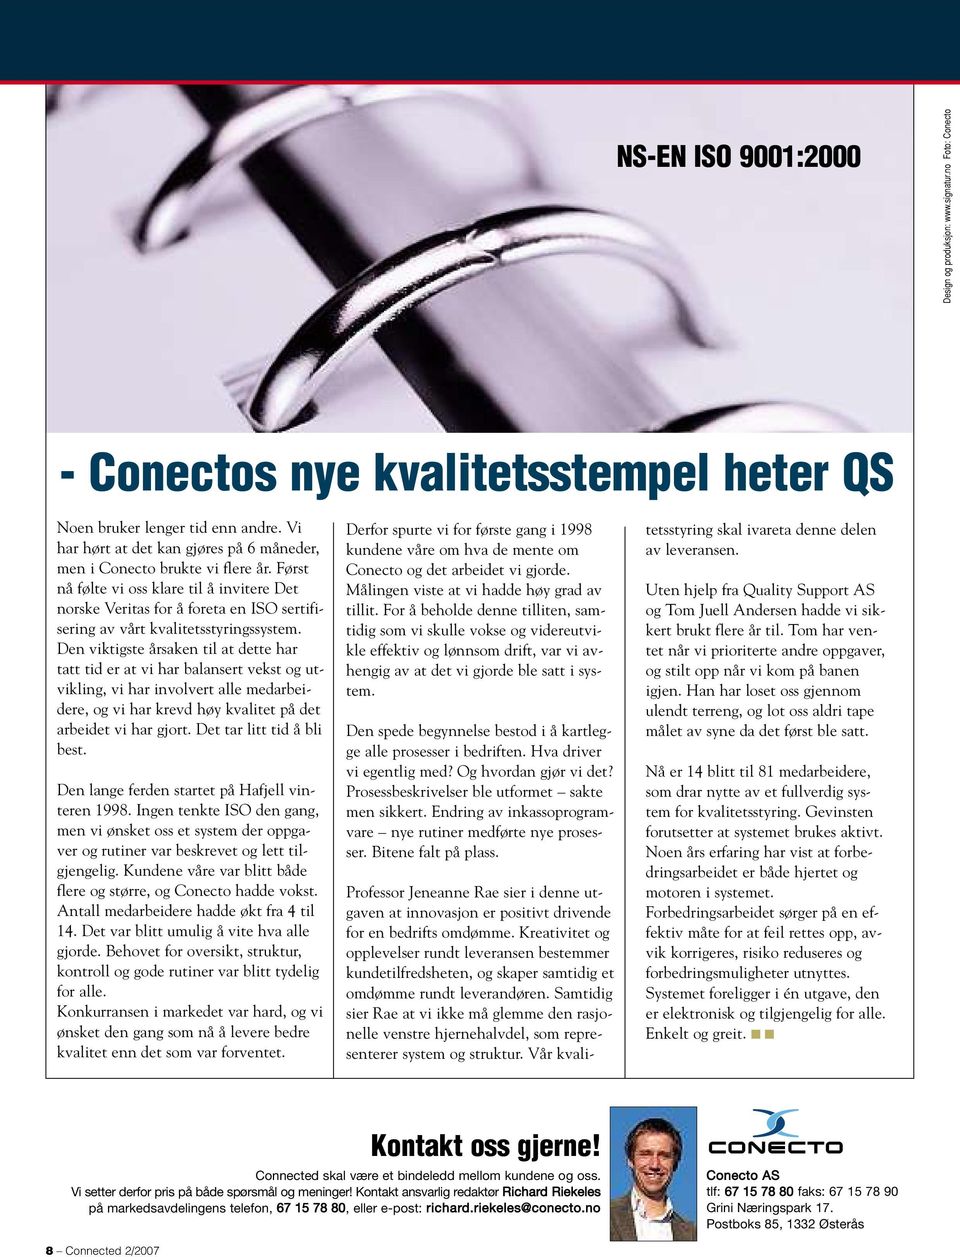 Først nå følte vi oss klare til å invitere Det norske Veritas for å foreta en ISO sertifisering av vårt kvalitetsstyringssystem.